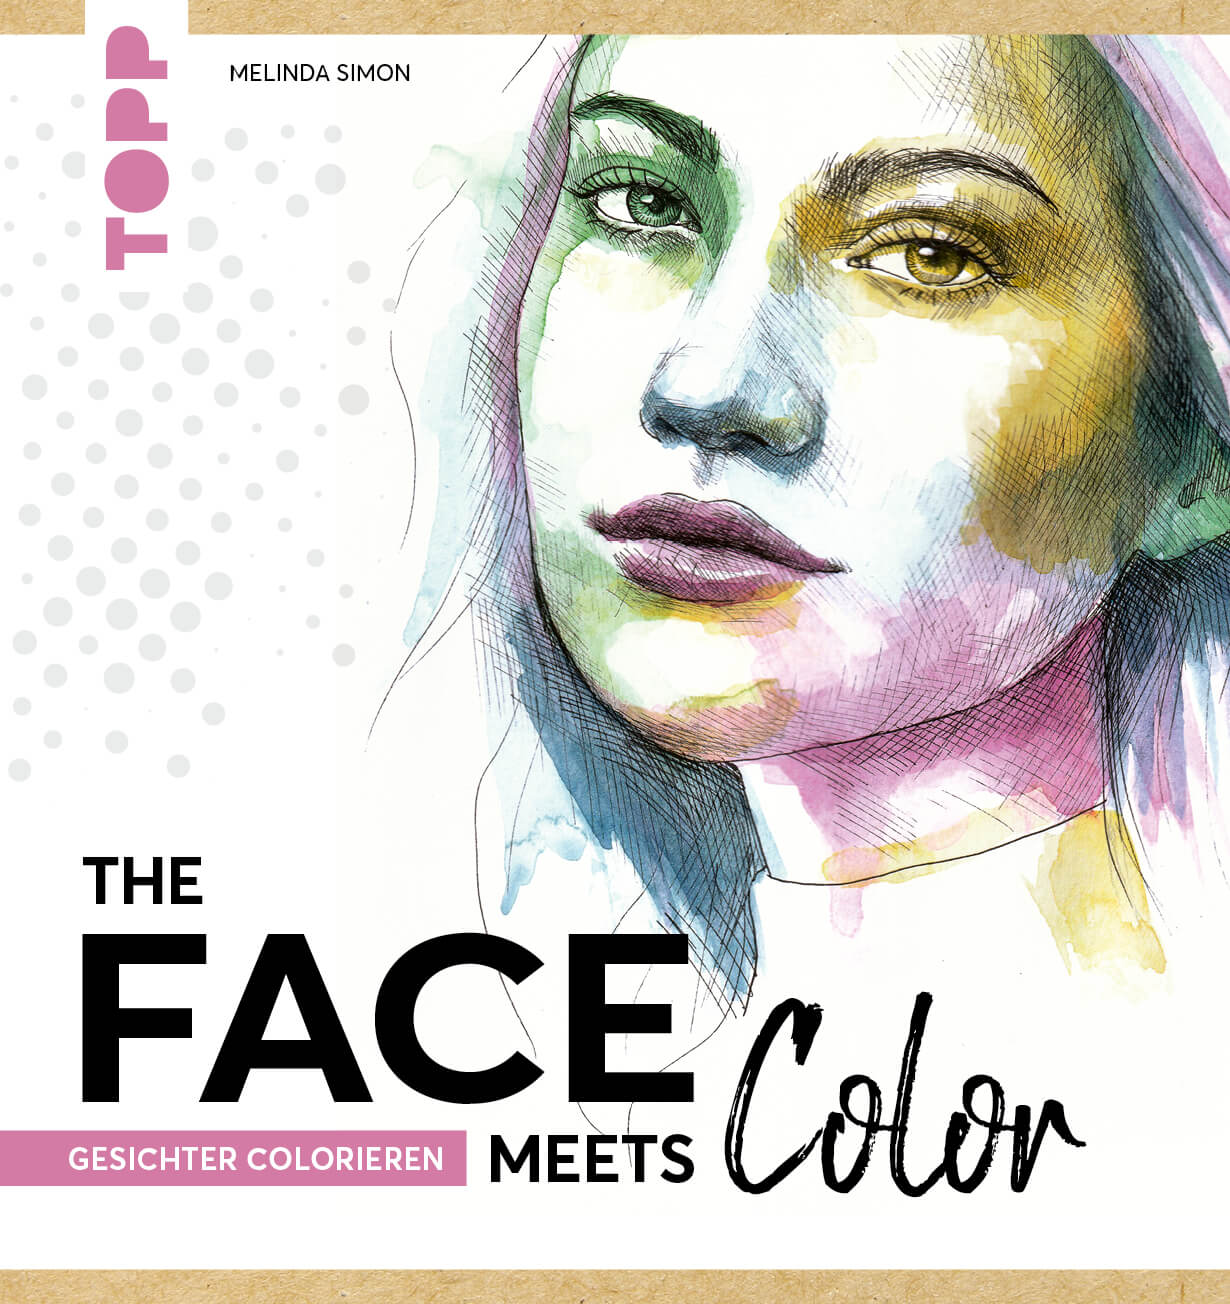 The Face meets color - Gesicht zeichnen und colorieren - neues Buch von Melinda Simon